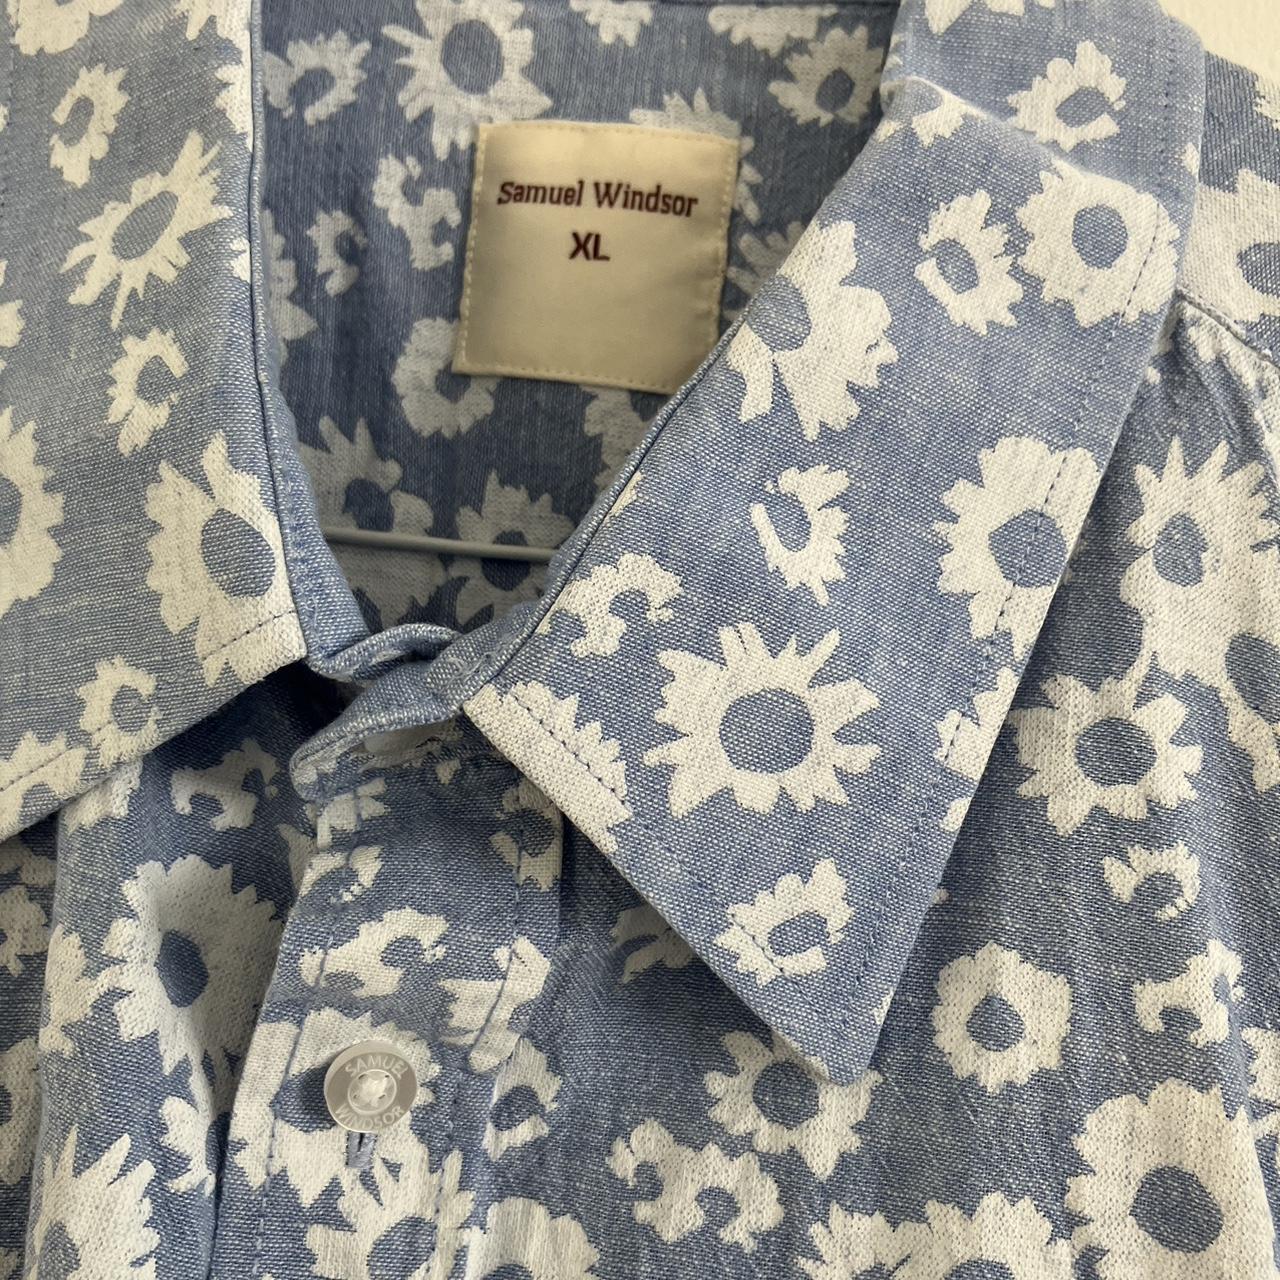 Smart short sleeve Samuel Windsor linen shirt XL for... - Depop